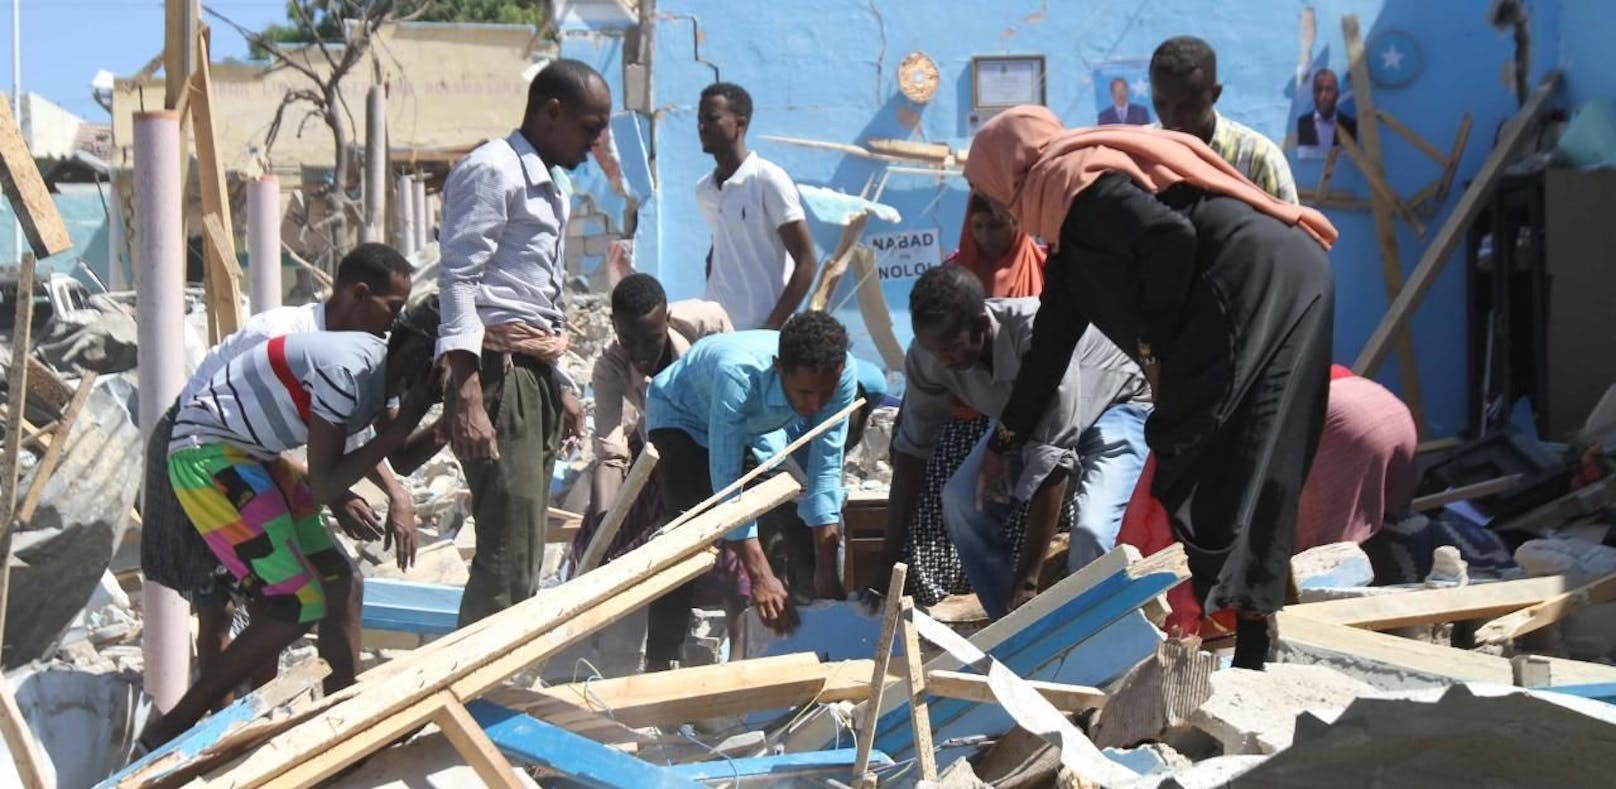 Am 20. Juni 2017 starben zehn Menschen bei Selbstmordanschlag der al-Shabaab-Miliz in Mogadischu. Archivbild